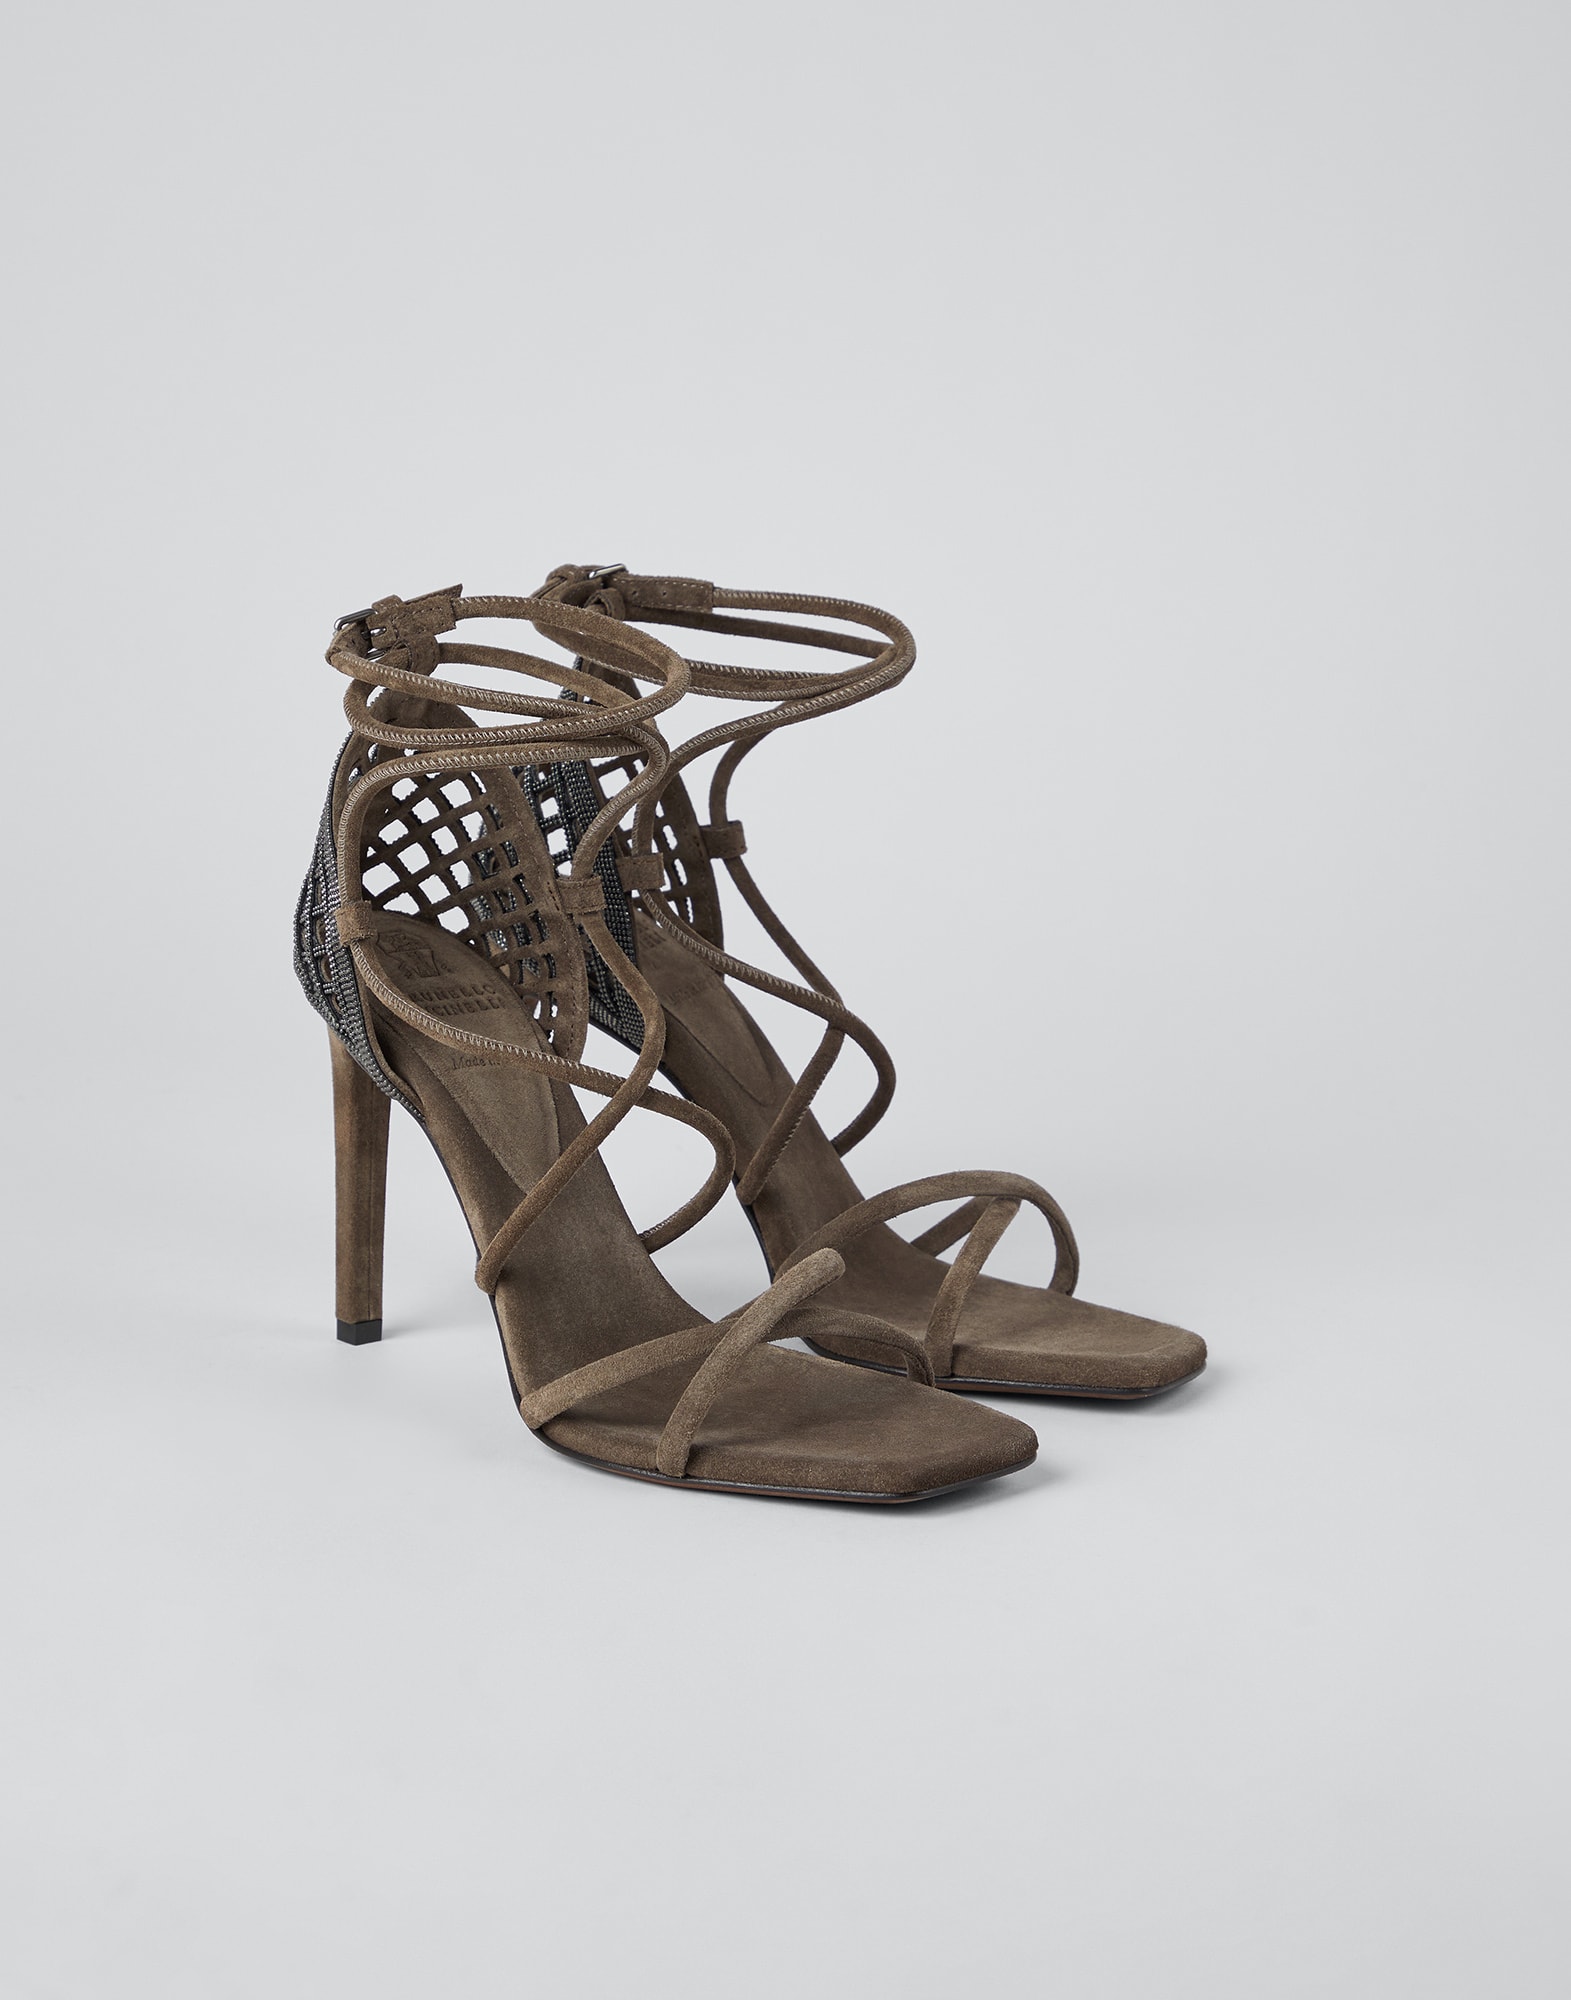 Zapatos de tacón en piel de ante Marrón Oscuro Mujer - Brunello Cucinelli